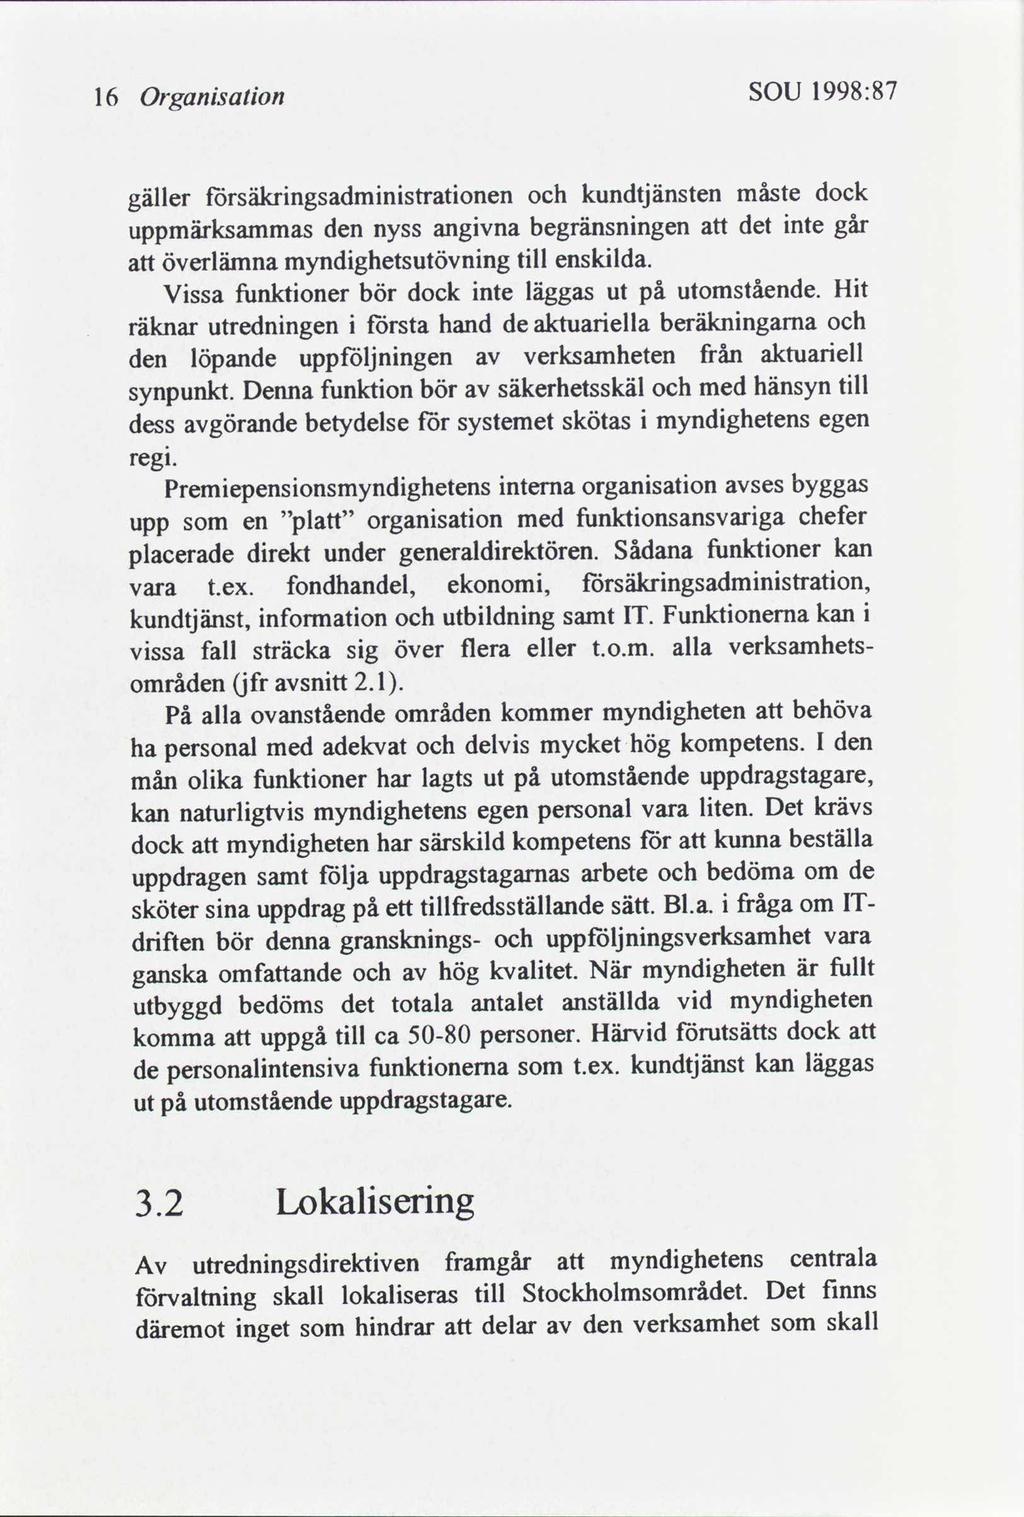 1998:87 SOU Organsaton 16 dock måste kundtjänsten törsäkrngsadmnstratonen gäller nte går det begränsnngen angvna den uppmärksammas nyss ensklda. tll myndghetsutövnng överlämna Ht utomstående.